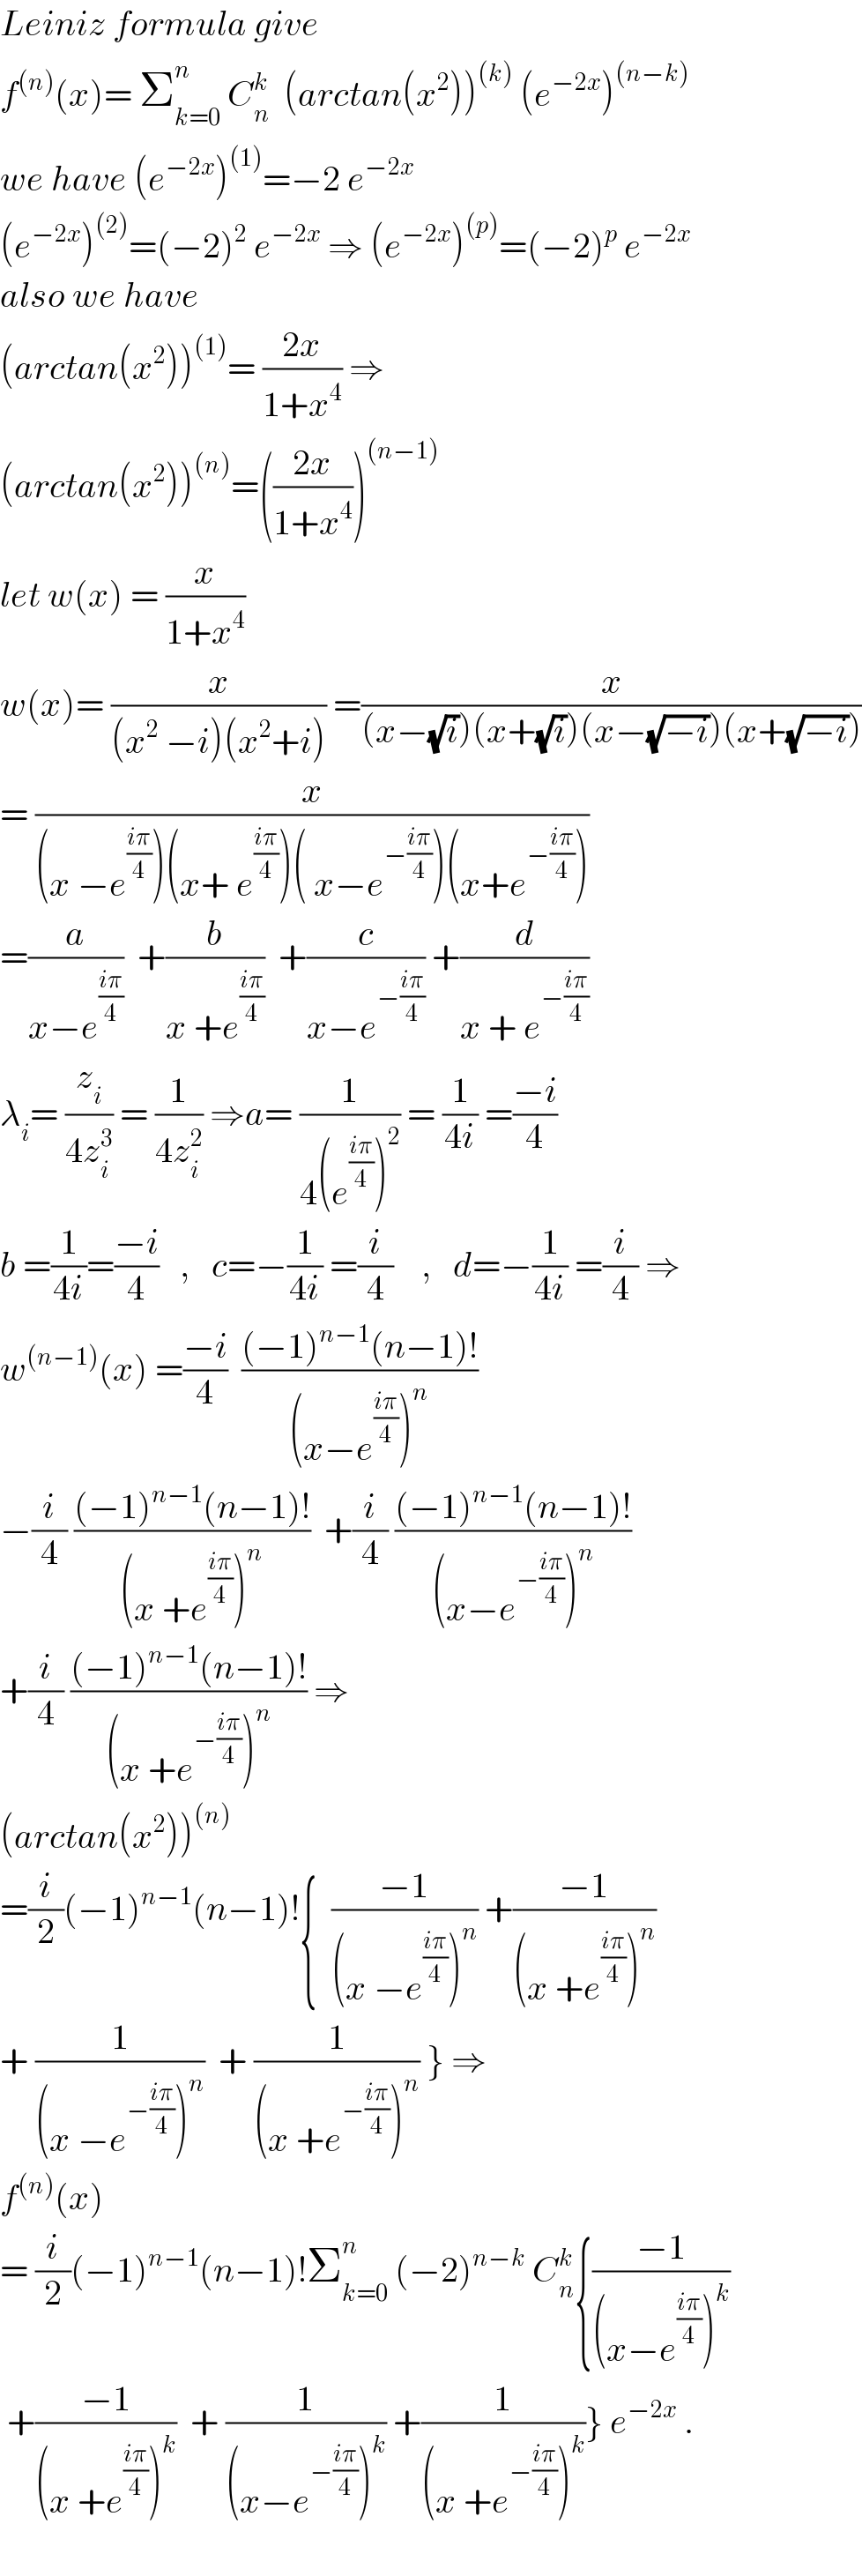 Leiniz formula give  f^((n)) (x)= Σ_(k=0) ^n  C_n ^k   (arctan(x^2 ))^((k))  (e^(−2x) )^((n−k))   we have (e^(−2x) )^((1)) =−2 e^(−2x)   (e^(−2x) )^((2)) =(−2)^2  e^(−2x)  ⇒ (e^(−2x) )^((p)) =(−2)^p  e^(−2x)   also we have   (arctan(x^2 ))^((1)) = ((2x)/(1+x^4 )) ⇒  (arctan(x^2 ))^((n)) =(((2x)/(1+x^4 )))^((n−1))   let w(x) = (x/(1+x^4 ))  w(x)= (x/((x^2  −i)(x^2 +i))) =(x/((x−(√i))(x+(√i))(x−(√(−i)))(x+(√(−i)))))  = (x/((x −e^((iπ)/4) )(x+ e^((iπ)/4) )( x−e^(−((iπ)/4)) )(x+e^(−((iπ)/4)) )))  =(a/(x−e^((iπ)/4) ))  +(b/(x +e^((iπ)/4) ))  +(c/(x−e^(−((iπ)/4)) )) +(d/(x + e^(−((iπ)/4)) ))  λ_i = (z_i /(4z_i ^3 )) = (1/(4z_i ^2 )) ⇒a= (1/(4(e^((iπ)/4) )^2 )) = (1/(4i)) =((−i)/4)  b =(1/(4i))=((−i)/4)   ,   c=−(1/(4i)) =(i/4)    ,   d=−(1/(4i)) =(i/4) ⇒  w^((n−1)) (x) =((−i)/4)  (((−1)^(n−1) (n−1)!)/((x−e^((iπ)/4) )^n ))  −(i/4) (((−1)^(n−1) (n−1)!)/((x +e^((iπ)/4) )^n ))  +(i/4) (((−1)^(n−1) (n−1)!)/((x−e^(−((iπ)/4)) )^n ))  +(i/4) (((−1)^(n−1) (n−1)!)/((x +e^(−((iπ)/4)) )^n )) ⇒  (arctan(x^2 ))^((n))   =(i/2)(−1)^(n−1) (n−1)!{  ((−1)/((x −e^((iπ)/4) )^n )) +((−1)/((x +e^((iπ)/4) )^n ))  + (1/((x −e^(−((iπ)/4)) )^n ))  + (1/((x +e^(−((iπ)/4)) )^n )) } ⇒  f^((n)) (x)  = (i/2)(−1)^(n−1) (n−1)!Σ_(k=0) ^n  (−2)^(n−k)  C_n ^k {((−1)/((x−e^((iπ)/4) )^k ))   +((−1)/((x +e^((iπ)/4) )^k ))  + (1/((x−e^(−((iπ)/4)) )^k )) +(1/((x +e^(−((iπ)/4)) )^k ))} e^(−2x)  .    